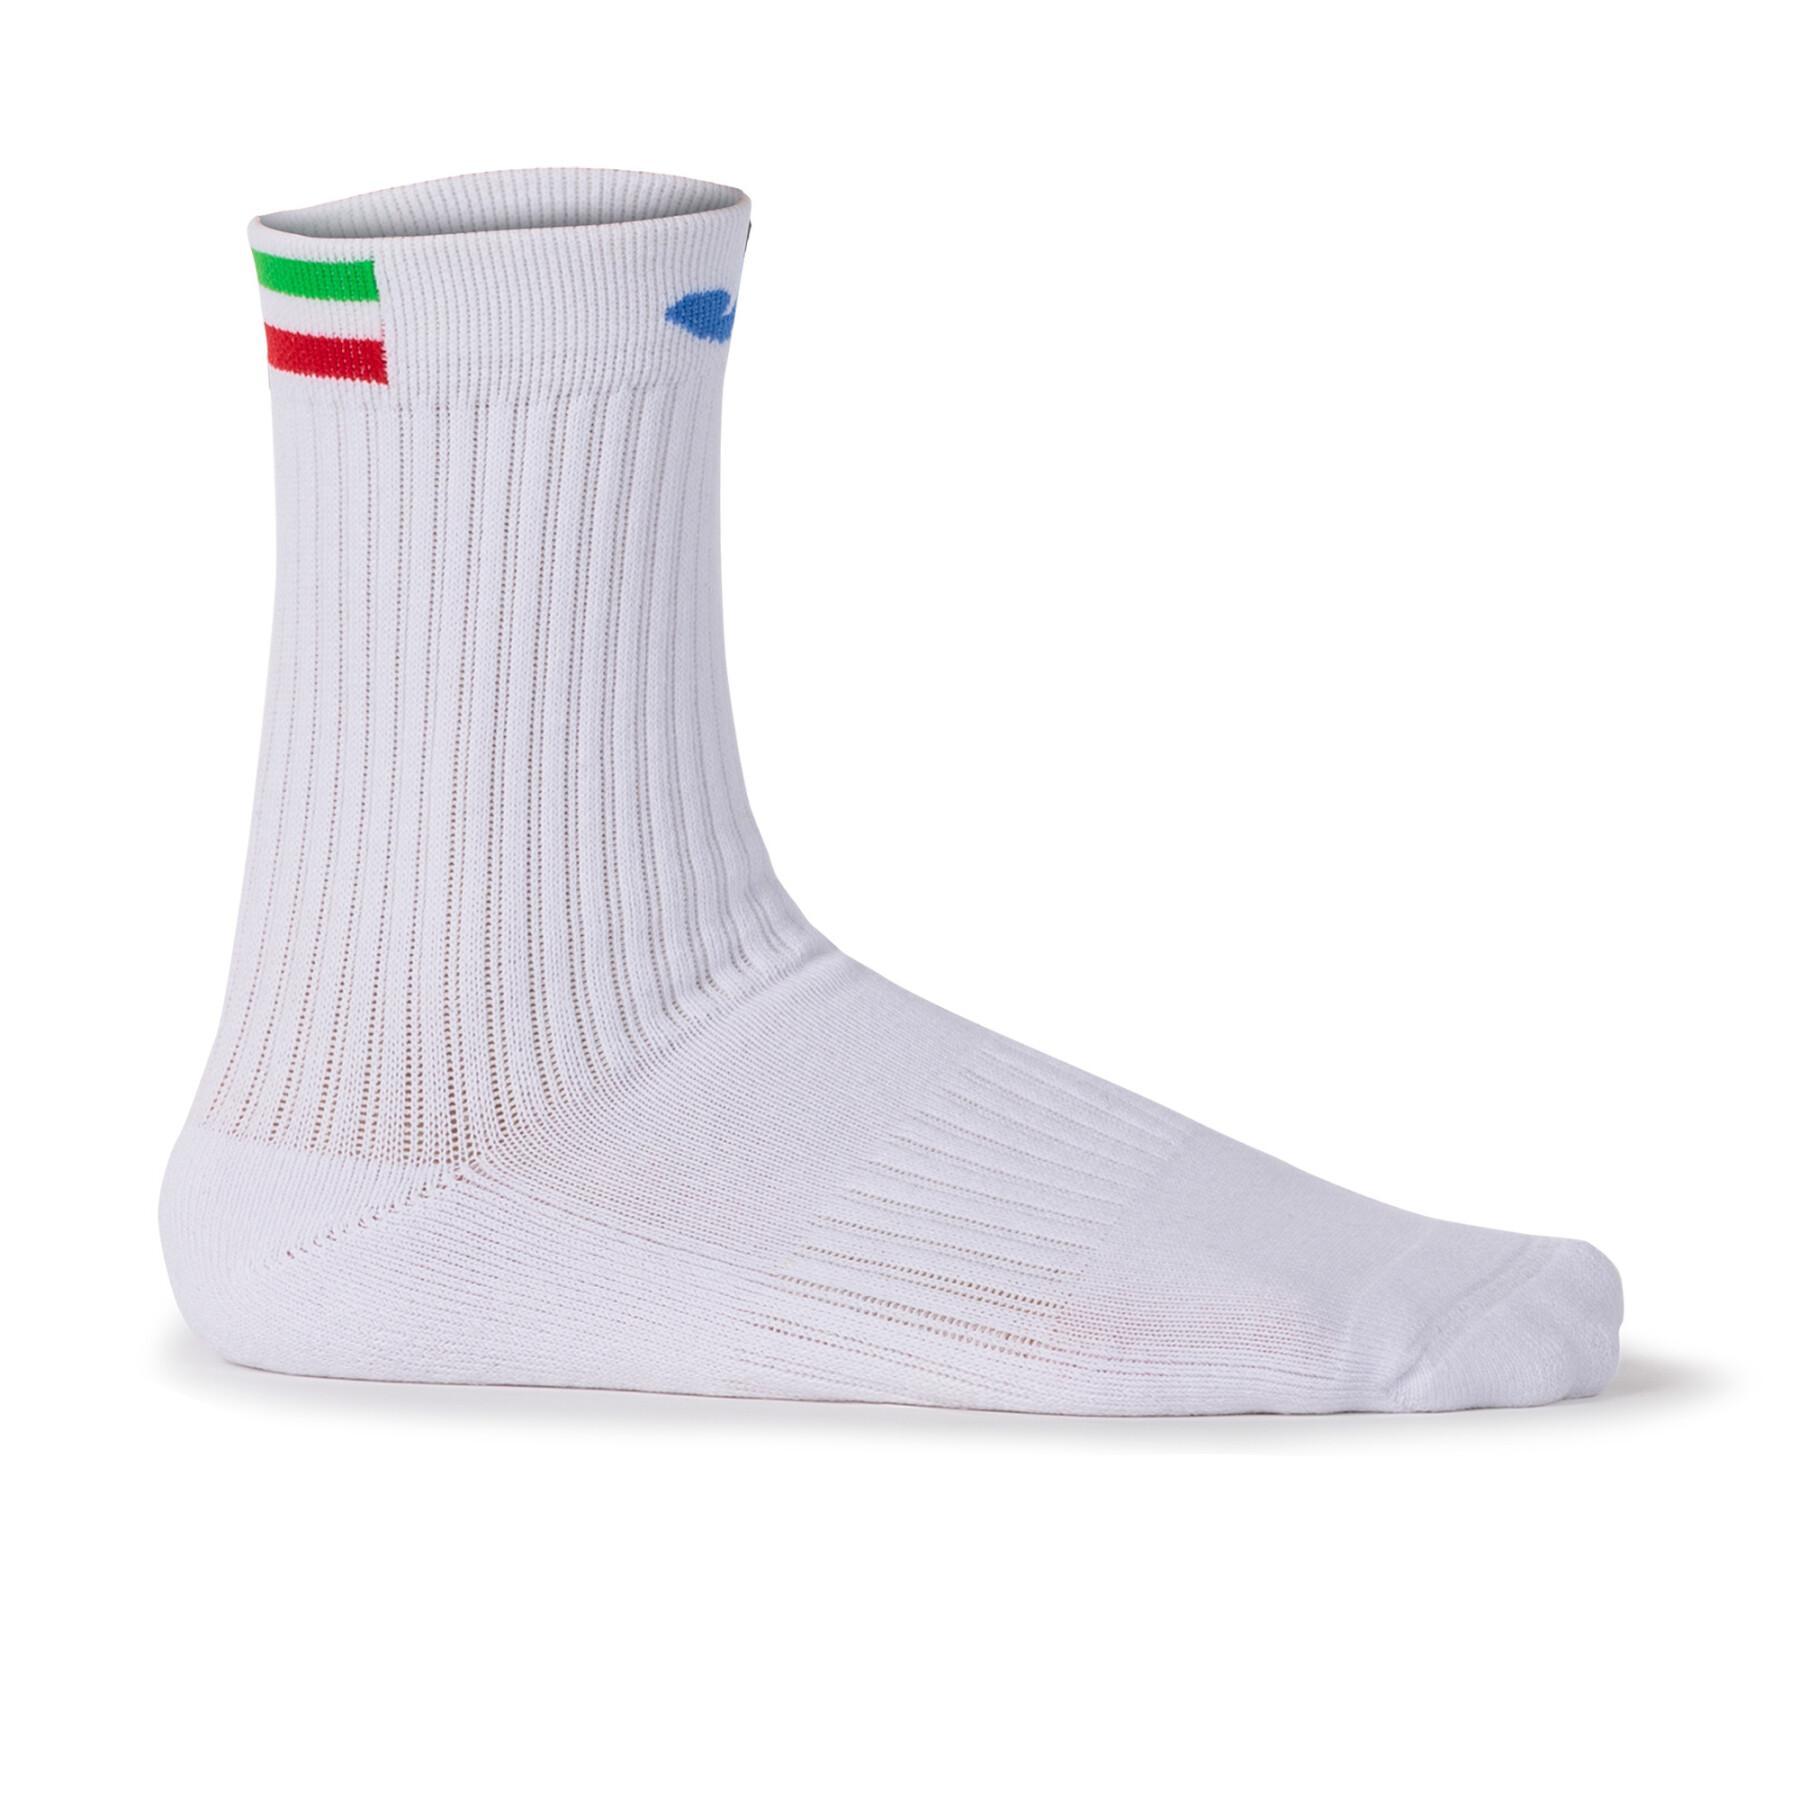 Socks Italian Tennis Federation Joma